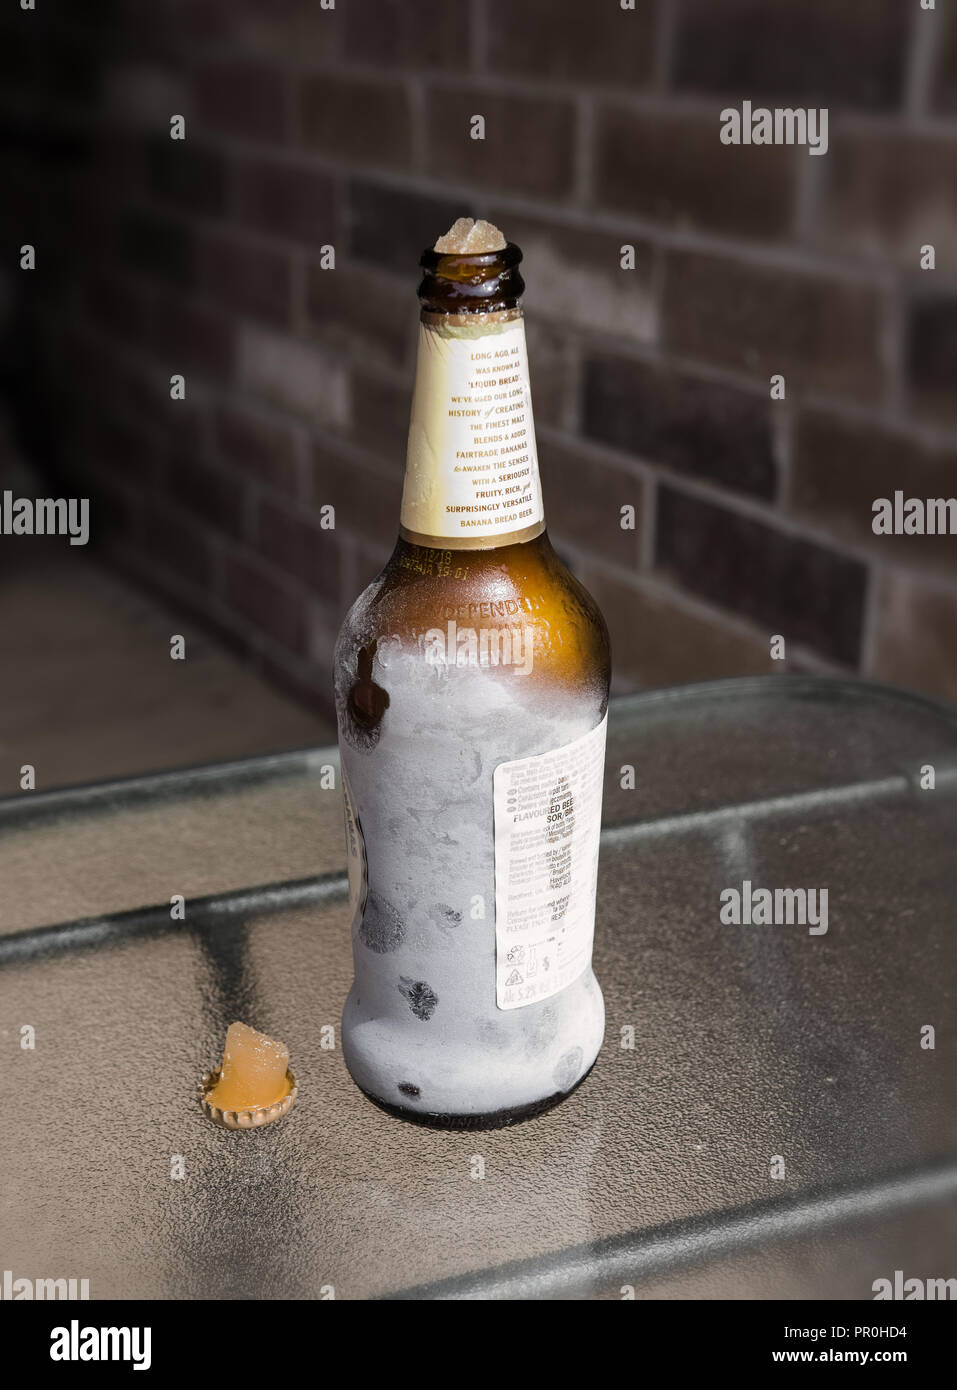 Eine Flasche Bier im Kühlschrank vergessen, die Kappe aus geknallt hat. Stockfoto